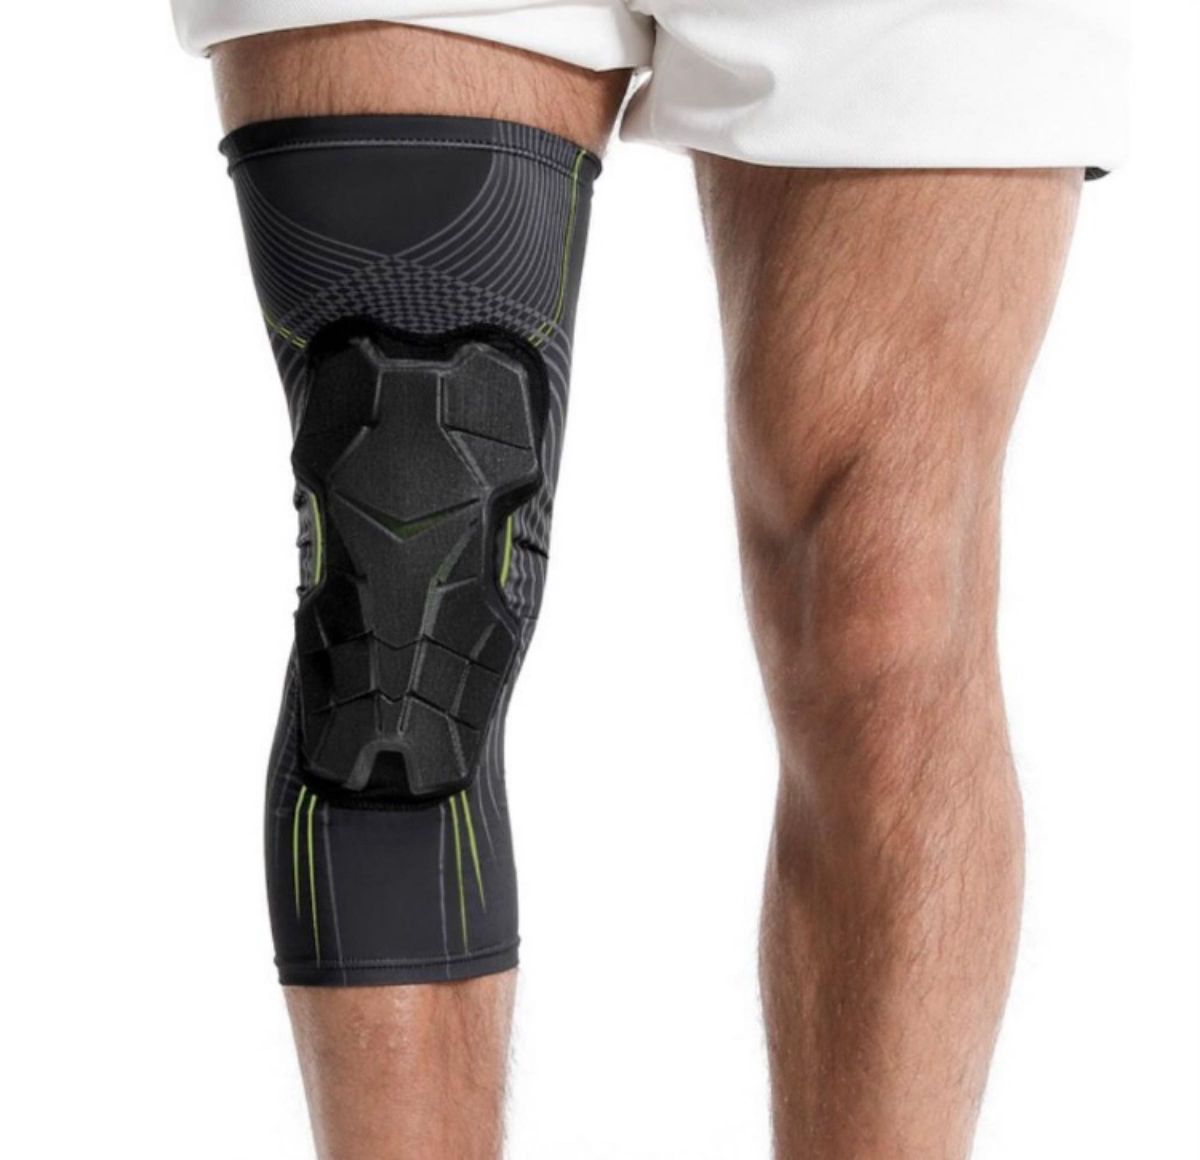 膝サポーター 膝固定関節靭帯サポーター スポーツサポーター 両ヒザ用 ランニング 左右兼用 通気性 ブラック 加圧式